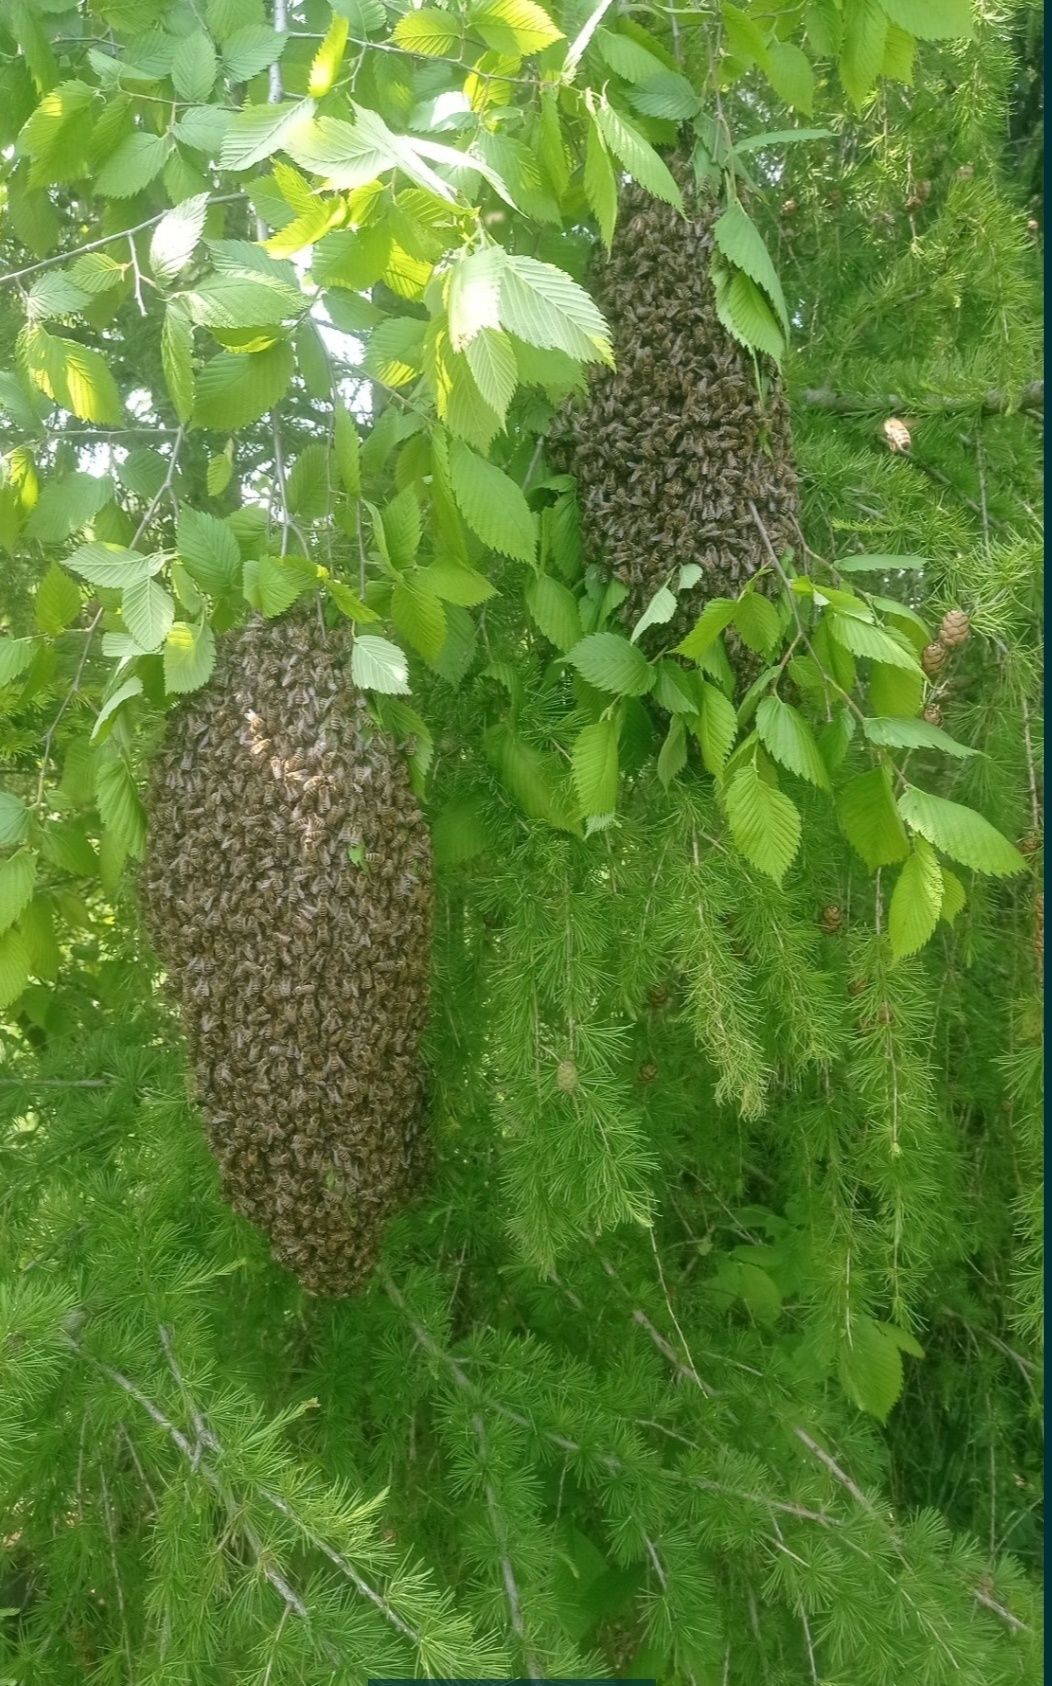 Pszczoly pogotowie rojowe